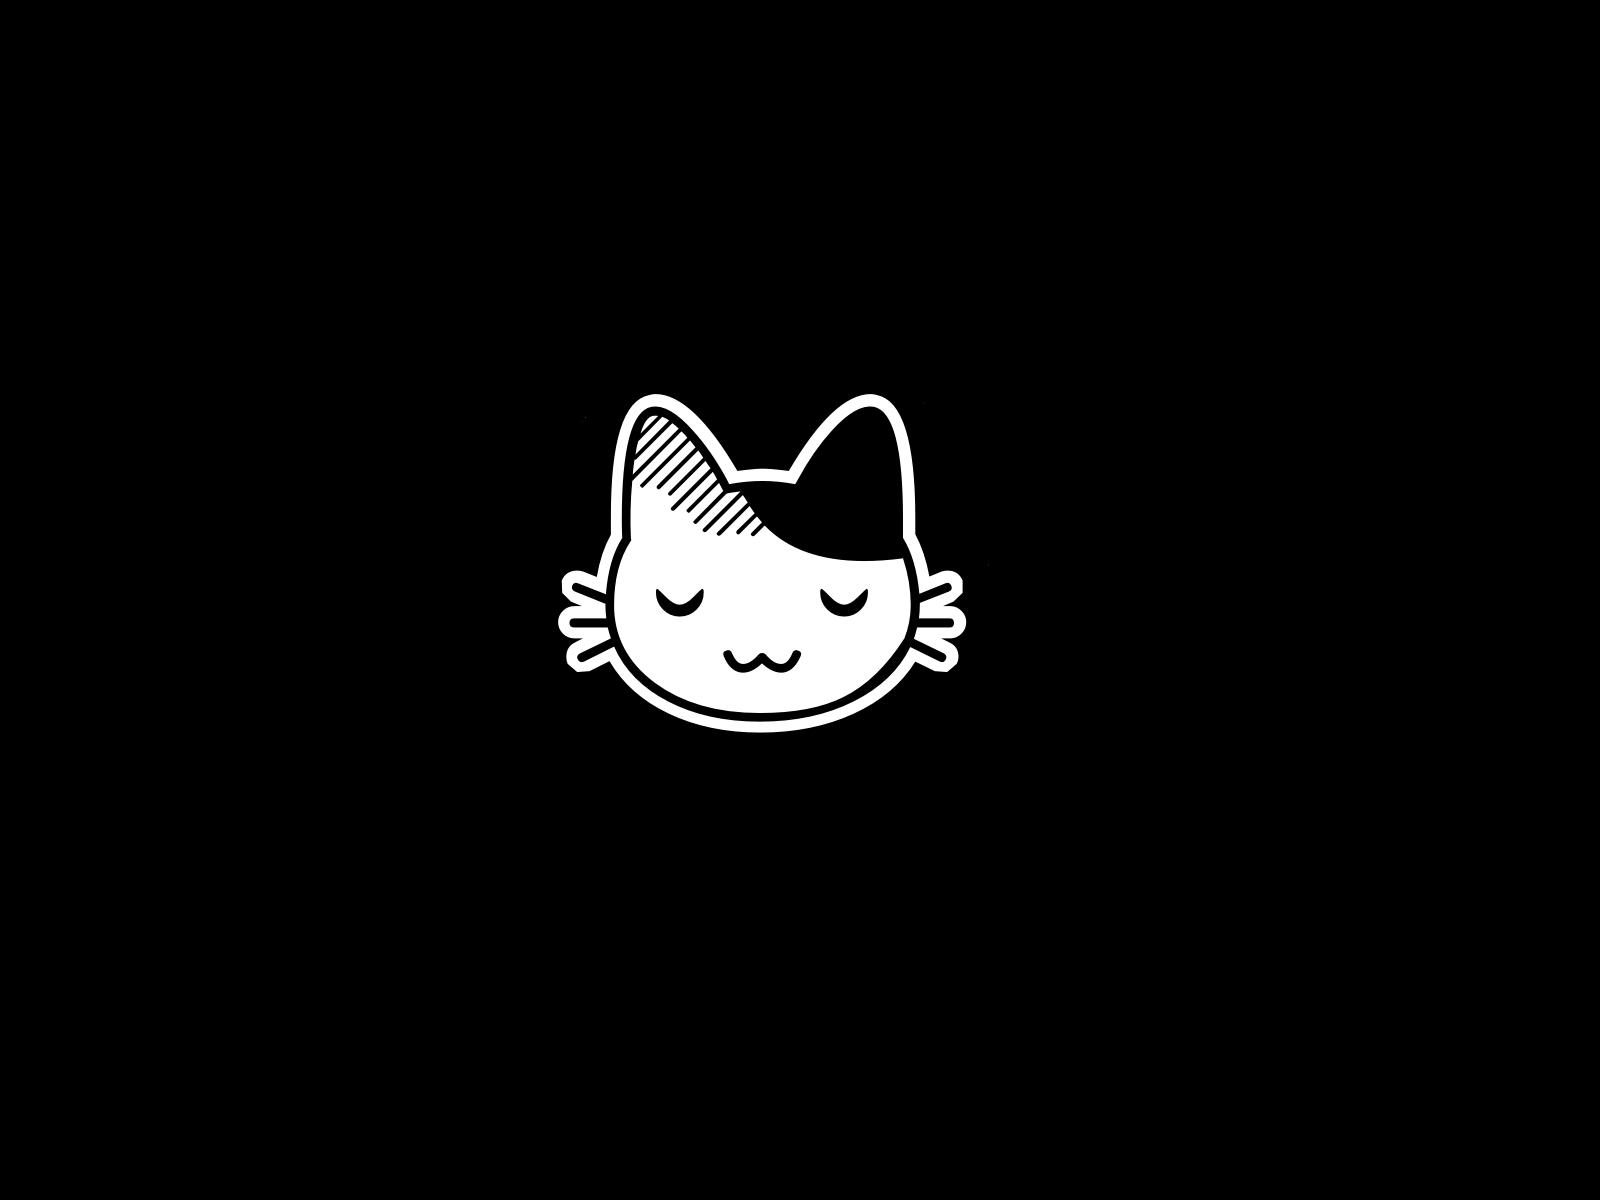 Kawaii cats cartoon wallpaper | 1600x1200 | 46216 | WallpaperUP